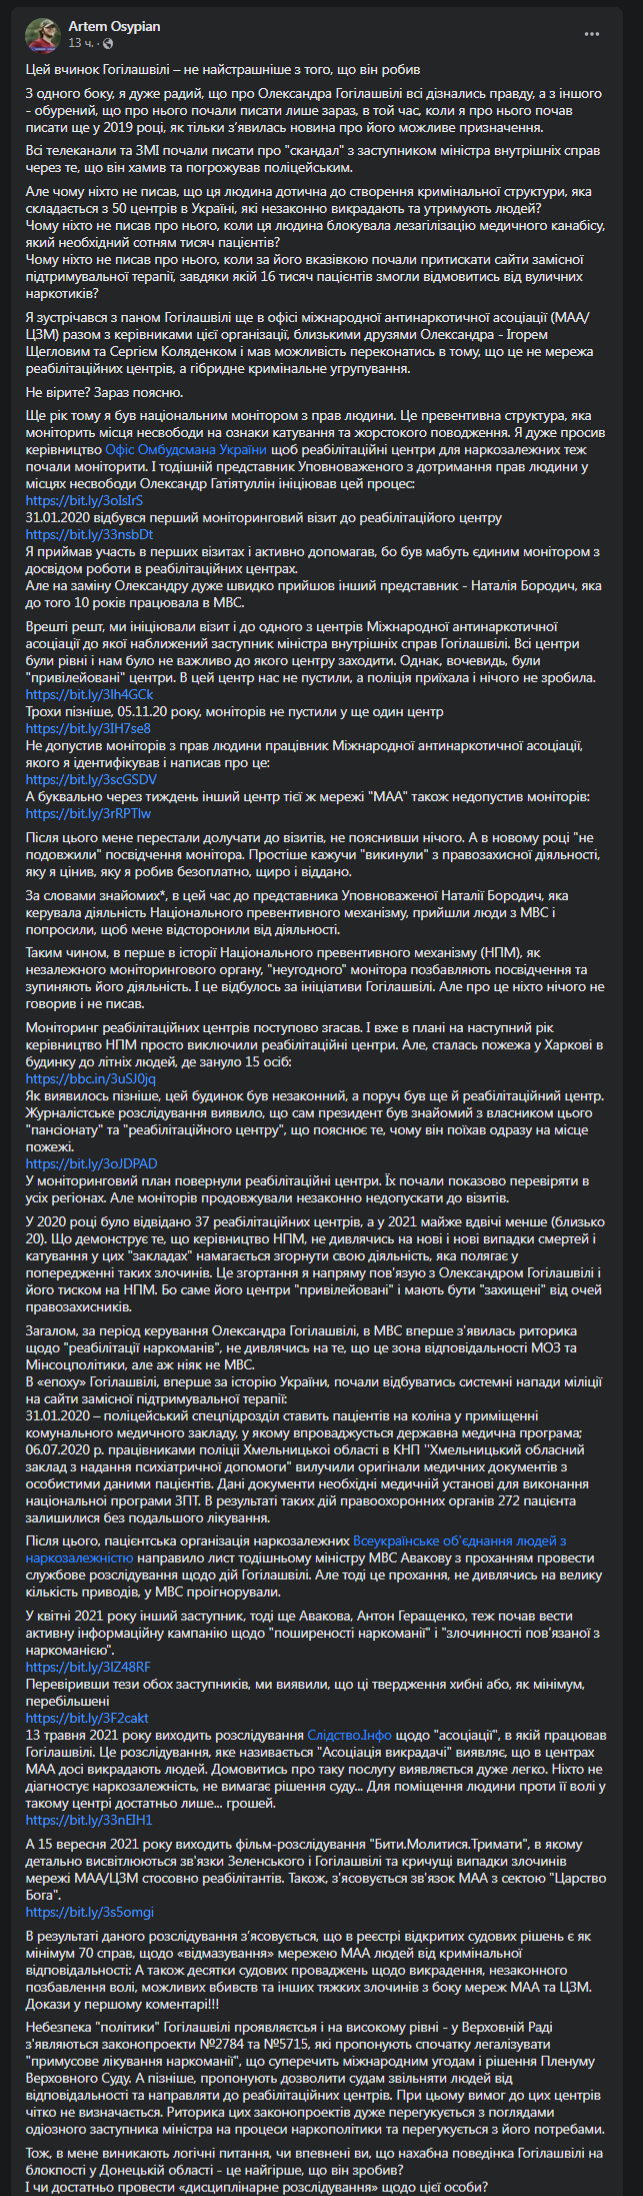 Гогилашвили связан с незаконными ребцентрами. Скриншот поста Осипяна